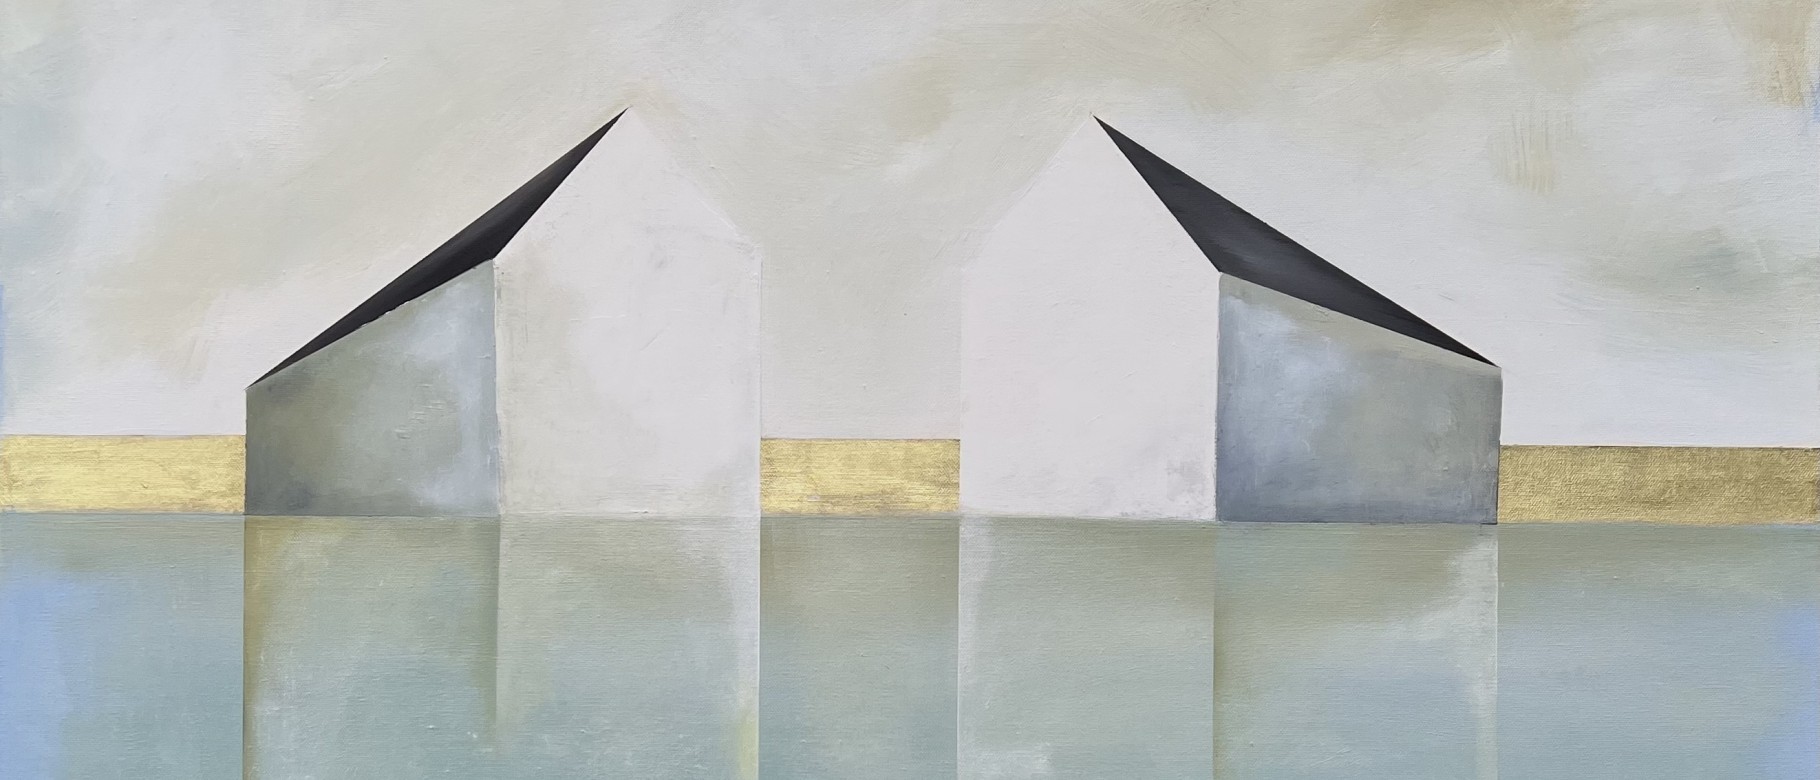 Ingunn Milla Joergensen, “A Wider Horizon.” 36x36,” oil on canvas with 18k gold leaf, 2020.